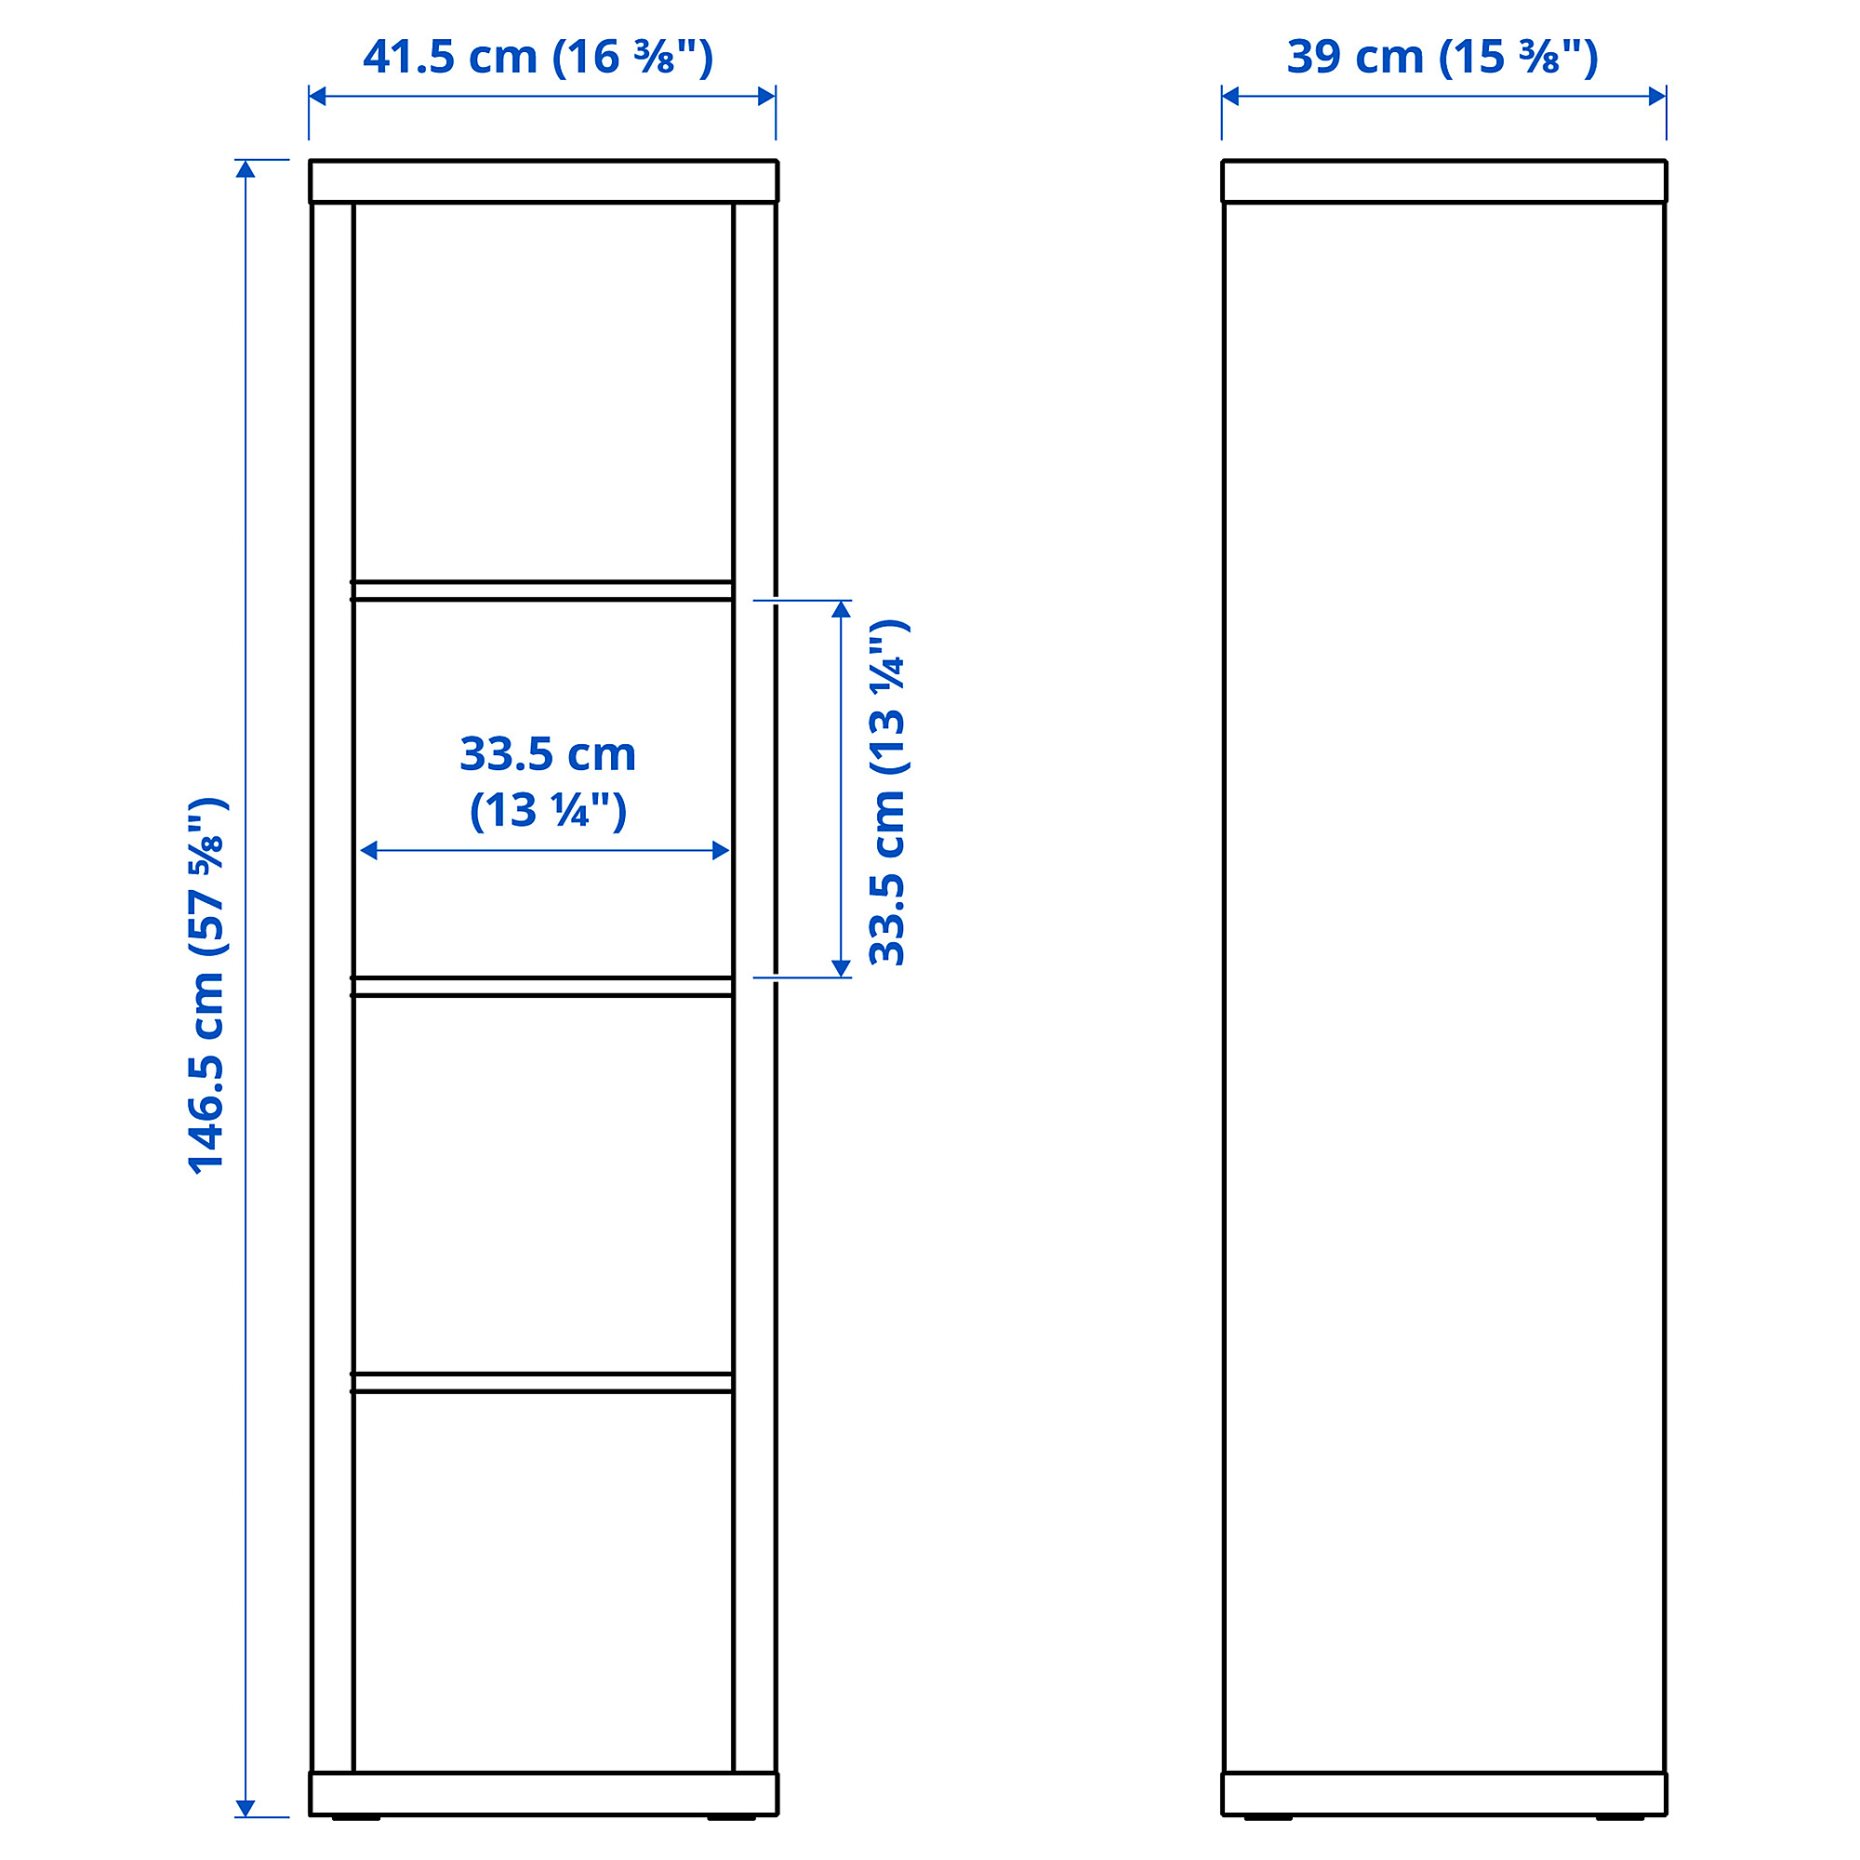 KALLAX/LACK, storage combination with shelf, 189x39x147 cm, 093.987.22